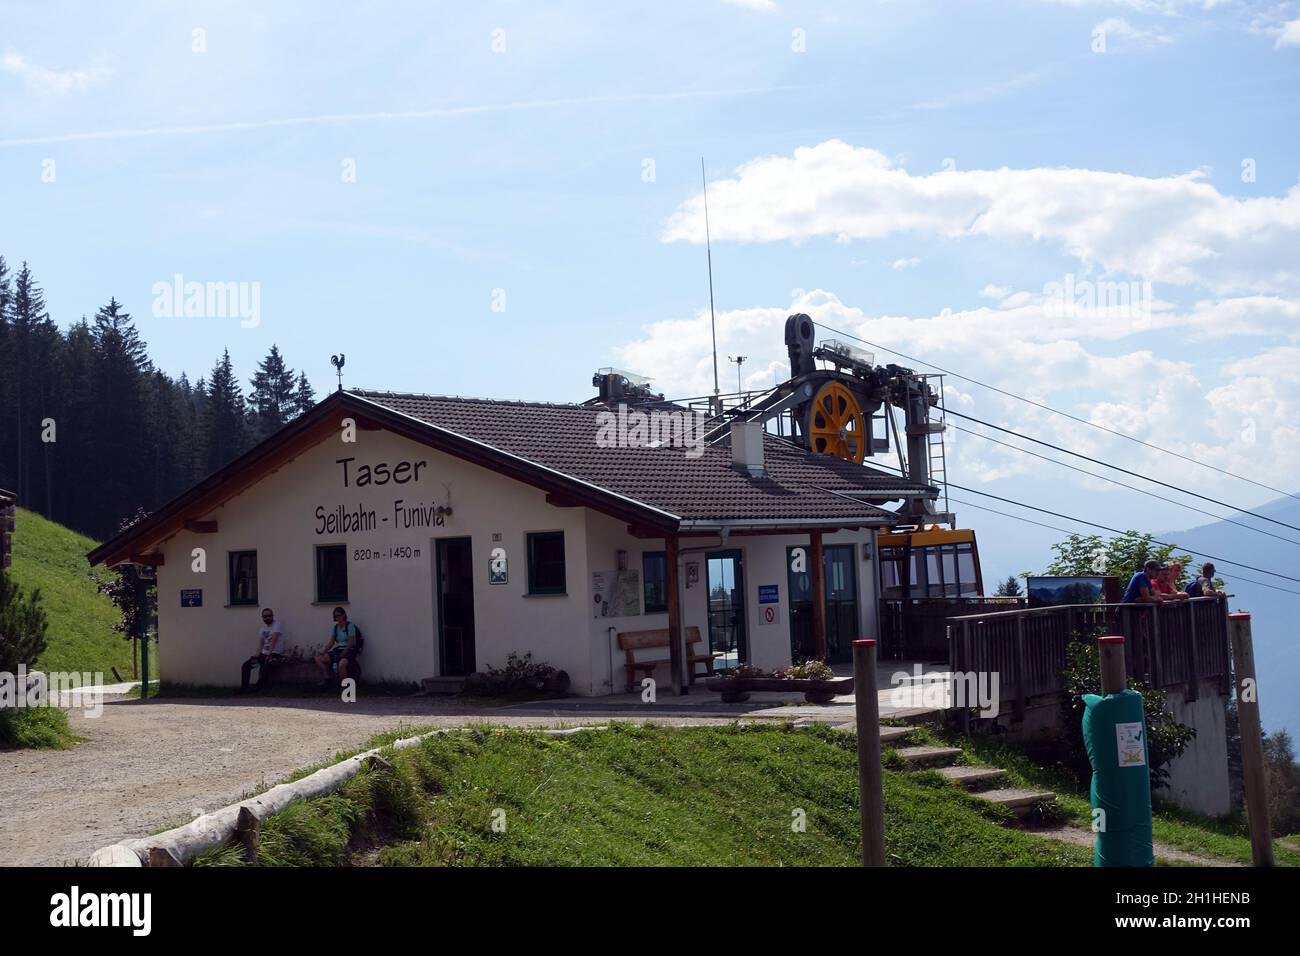 Bergstation der Taser-Seilbahn, Schenna, Südtirol, Italien Stock Photo